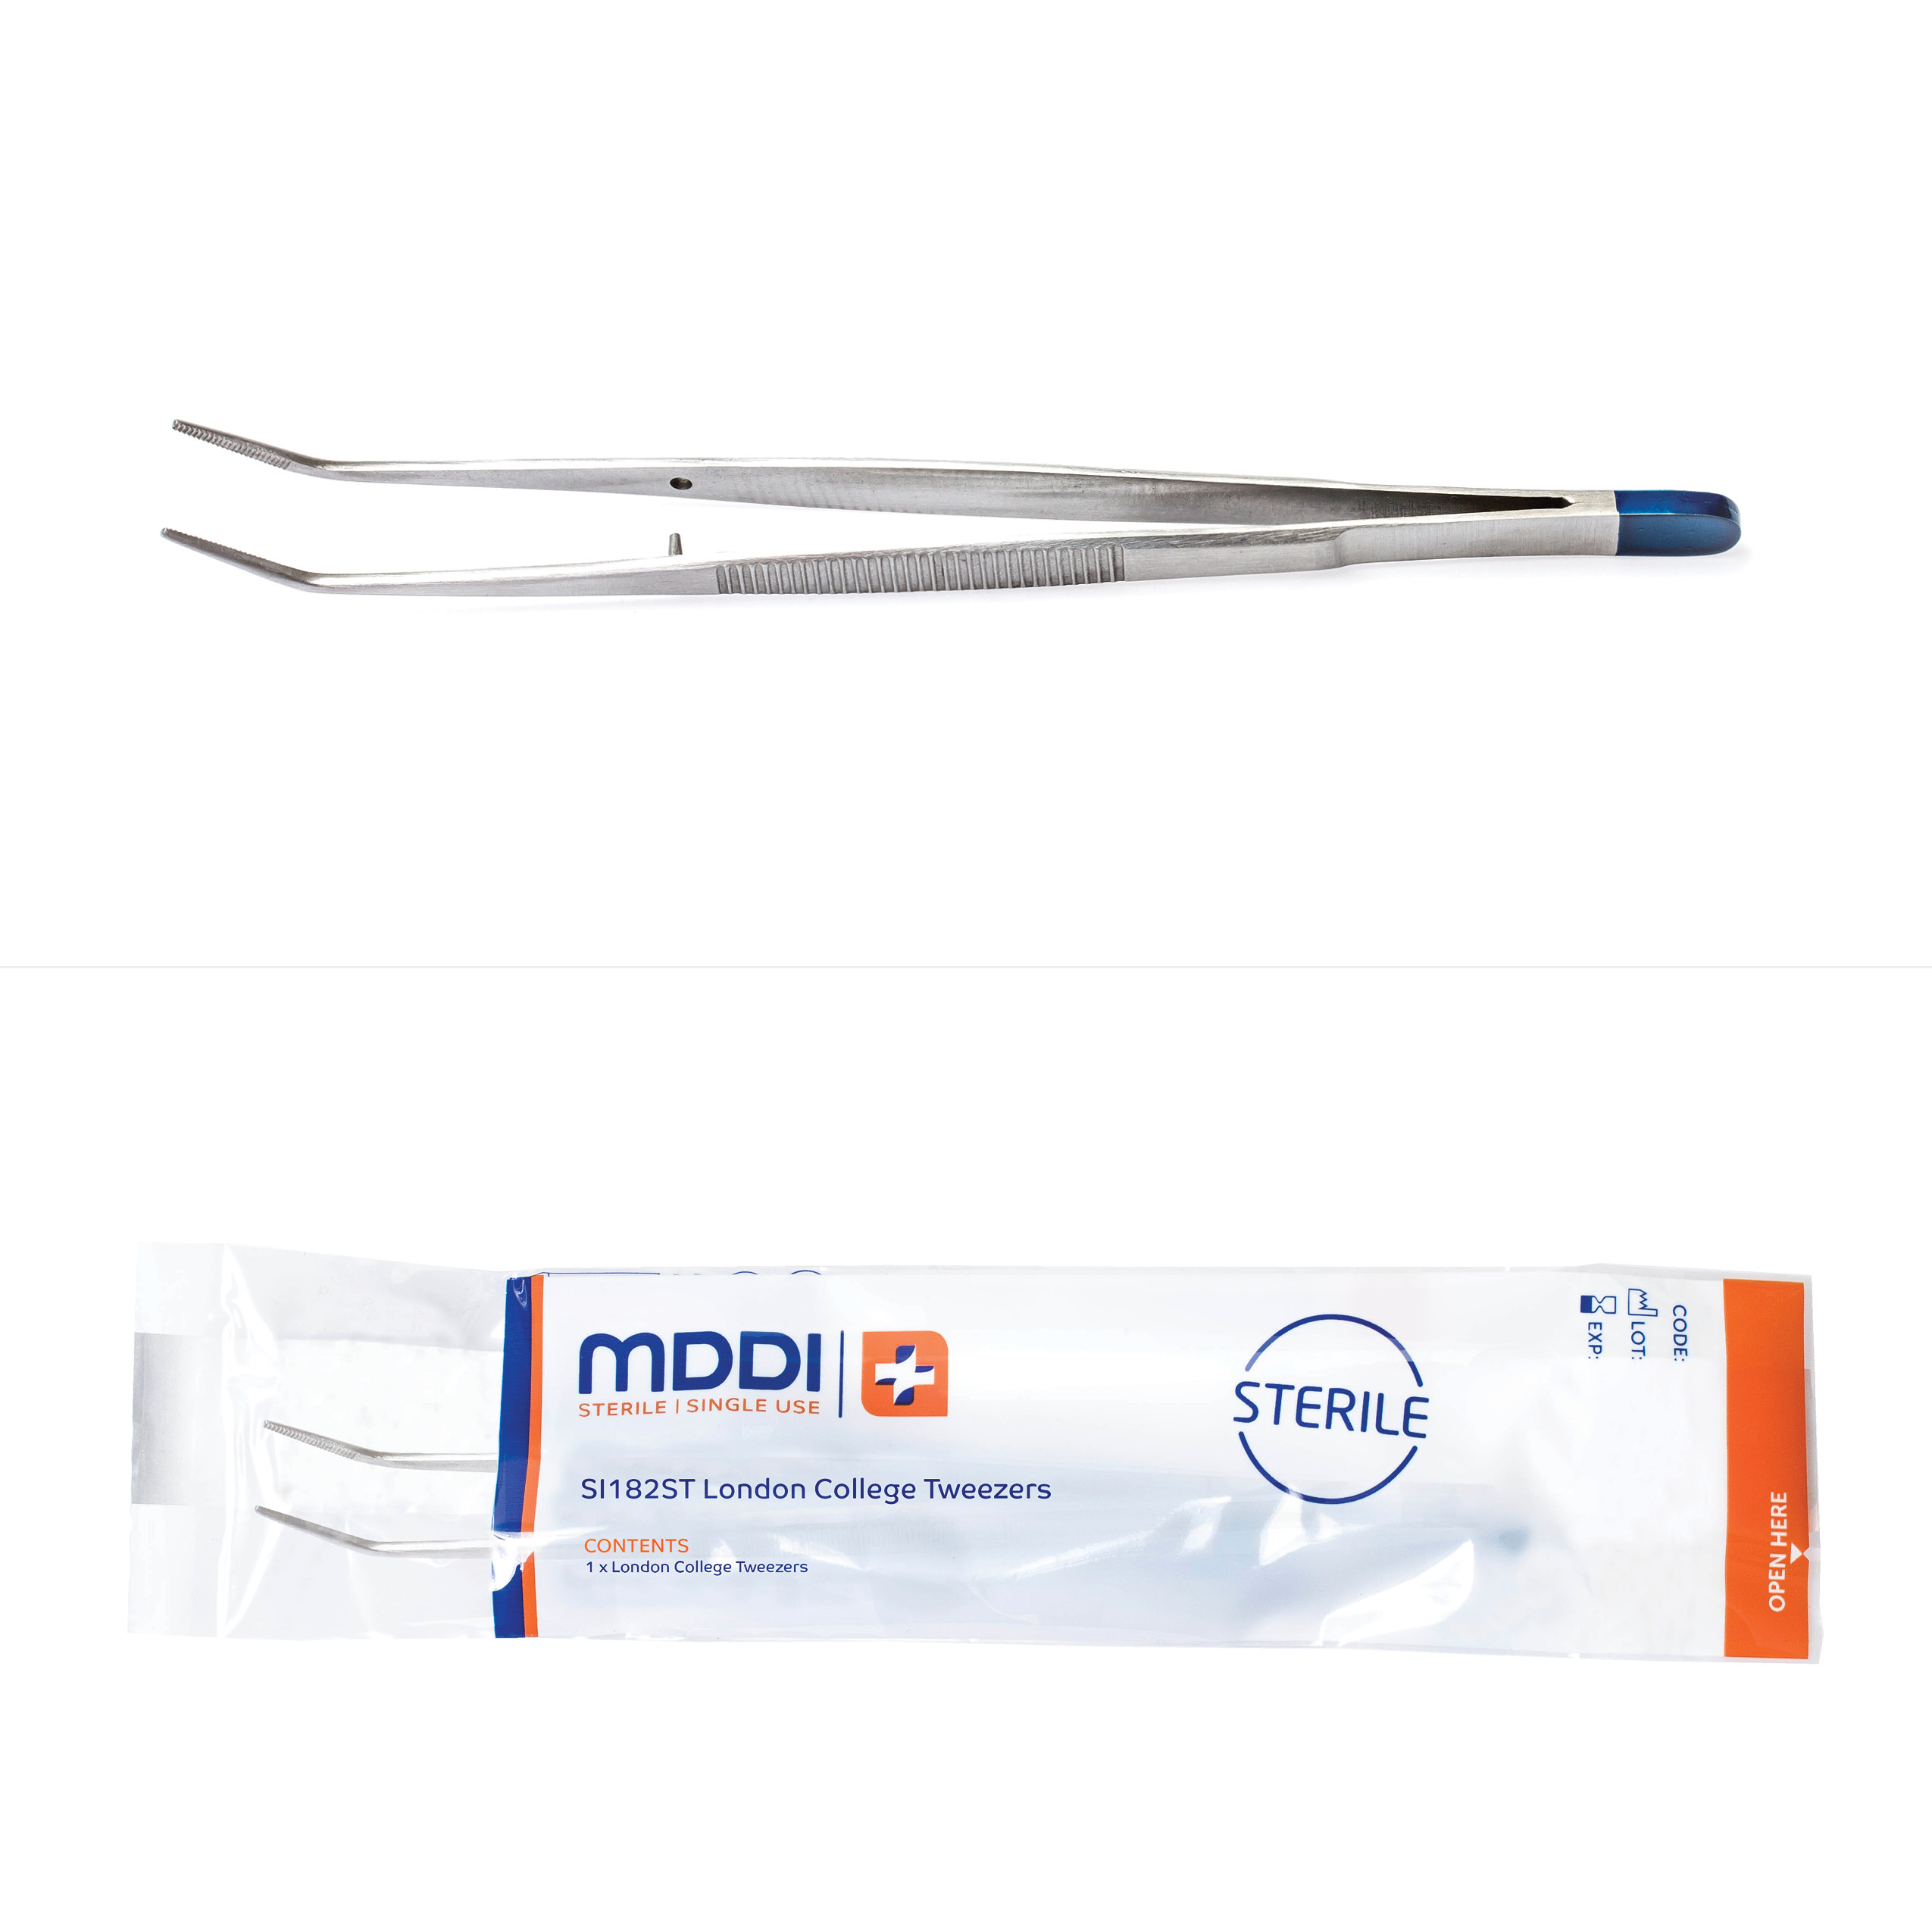 MDDI single use sterile dental premium tweezers